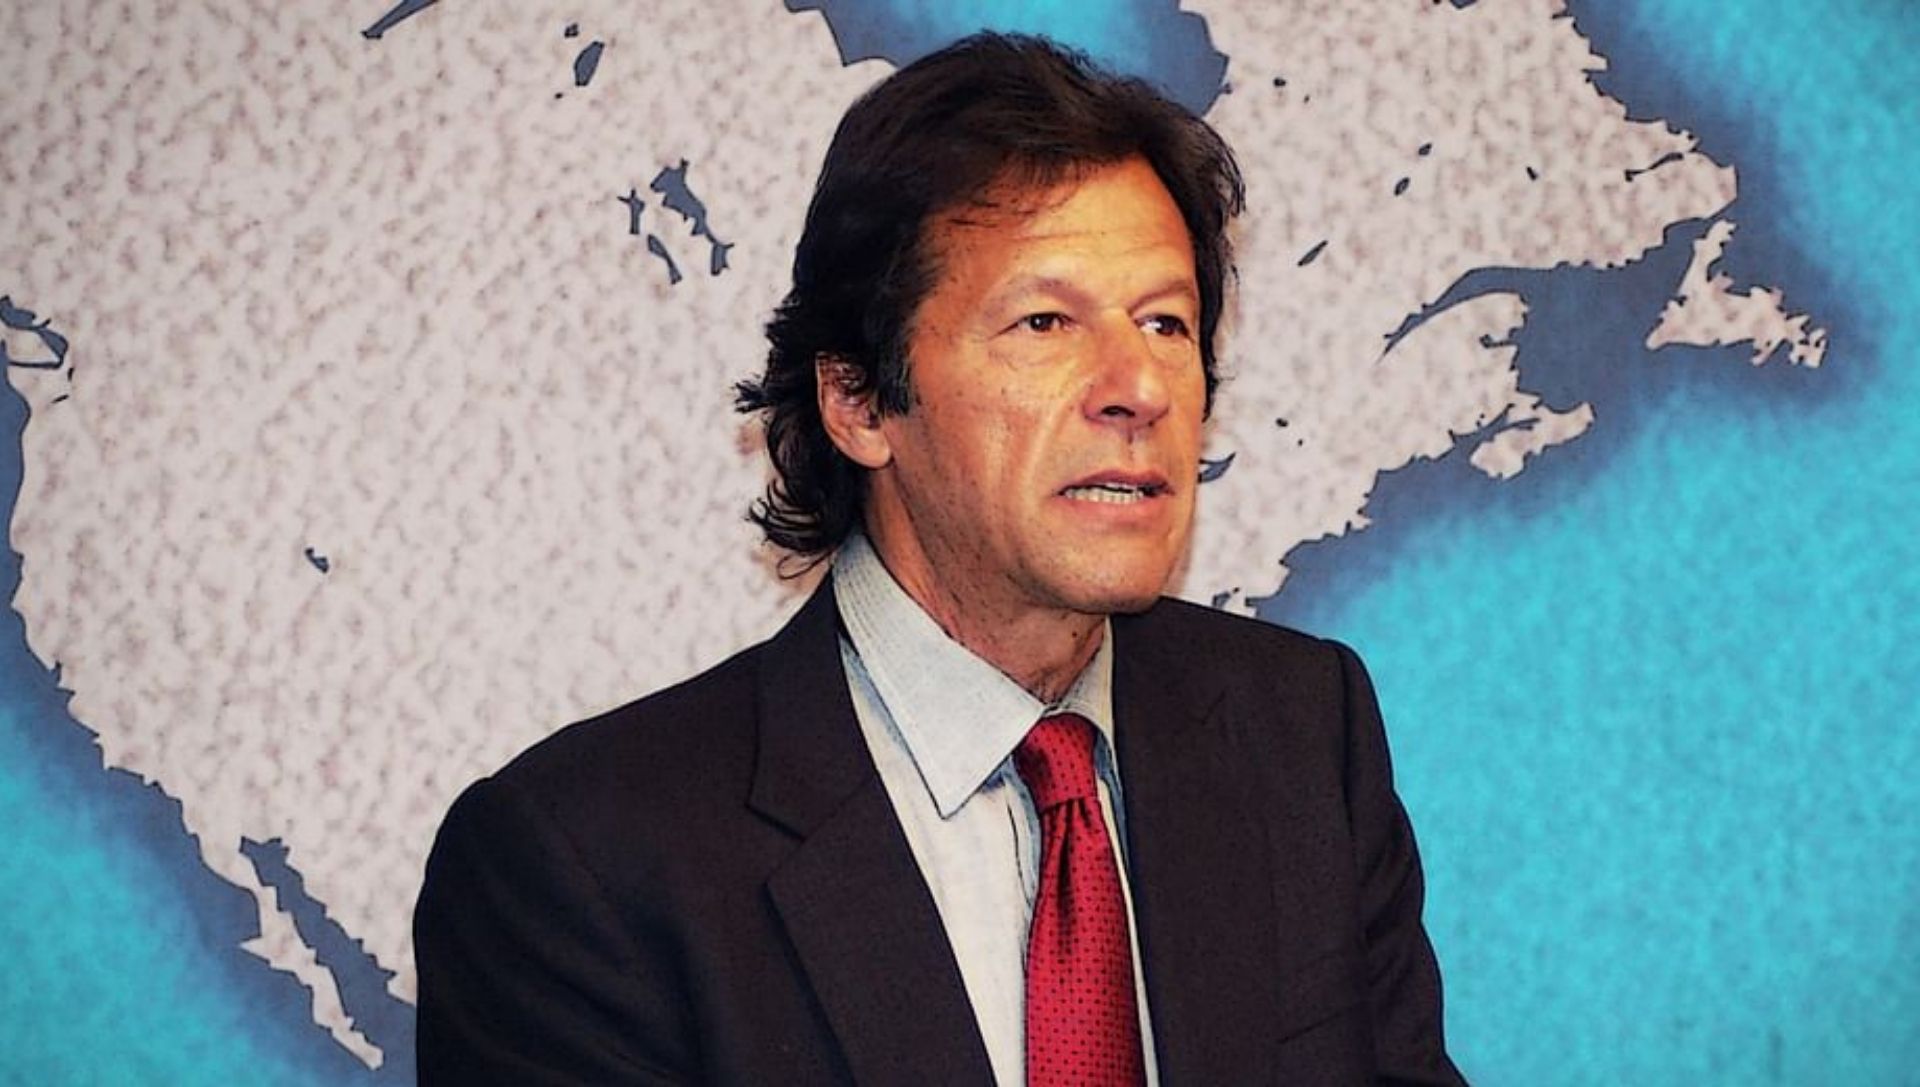 Pakistan's prime minister Imran Khan